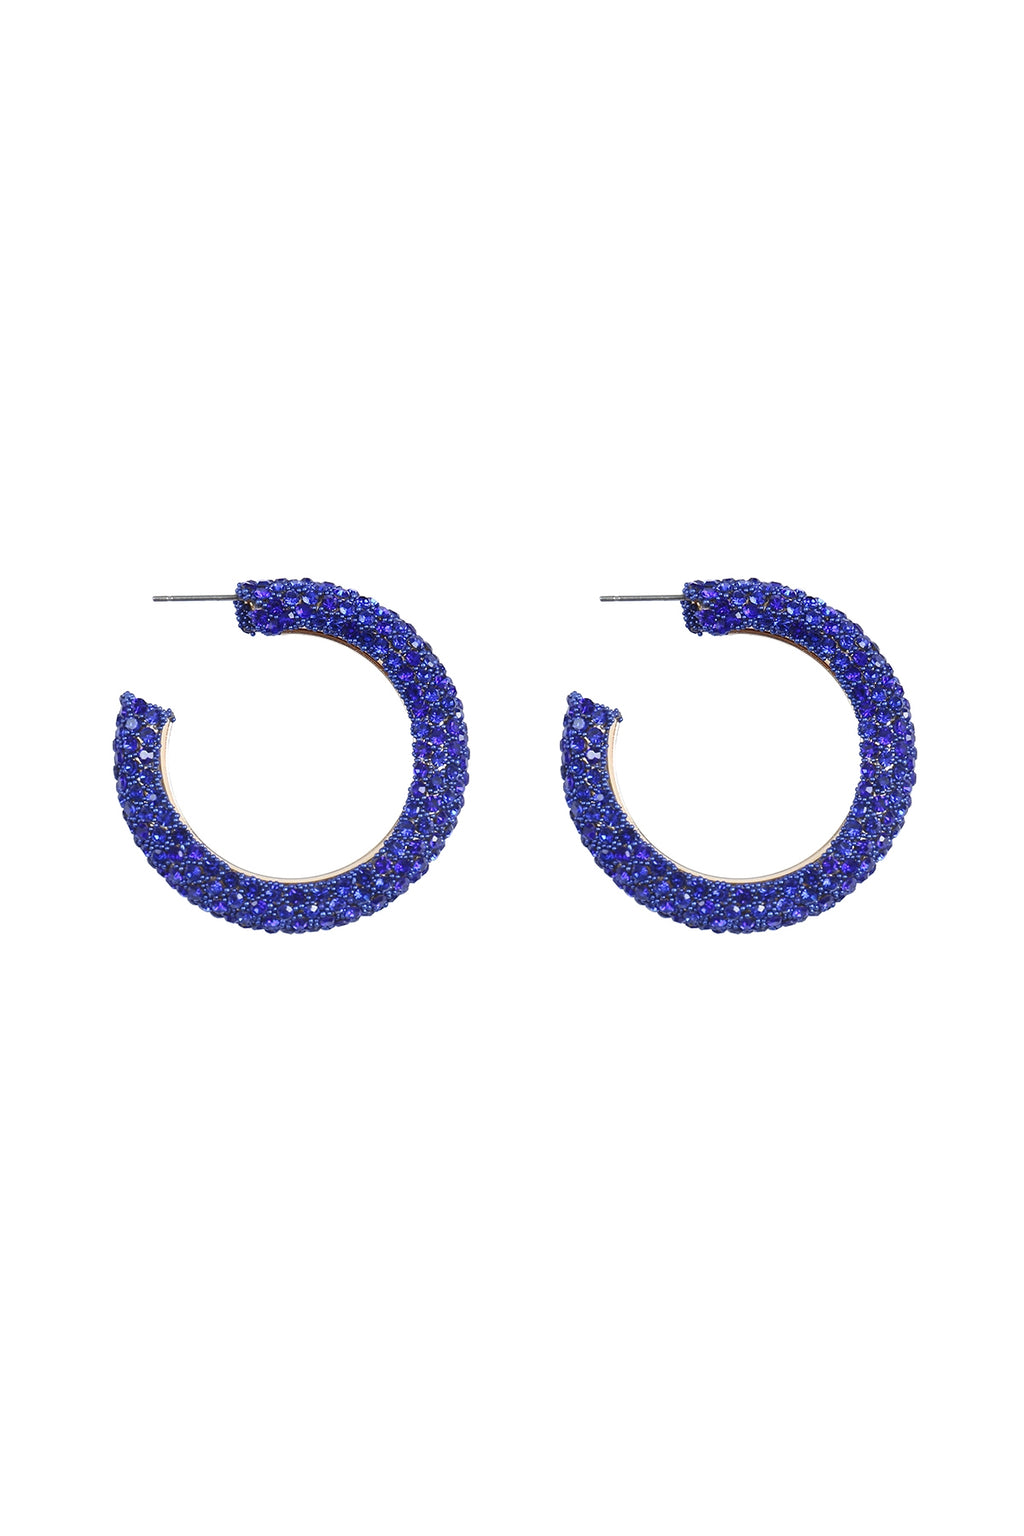 Colored Pave Rhinestone Hoop Earrings Sapphire - Pack of 6